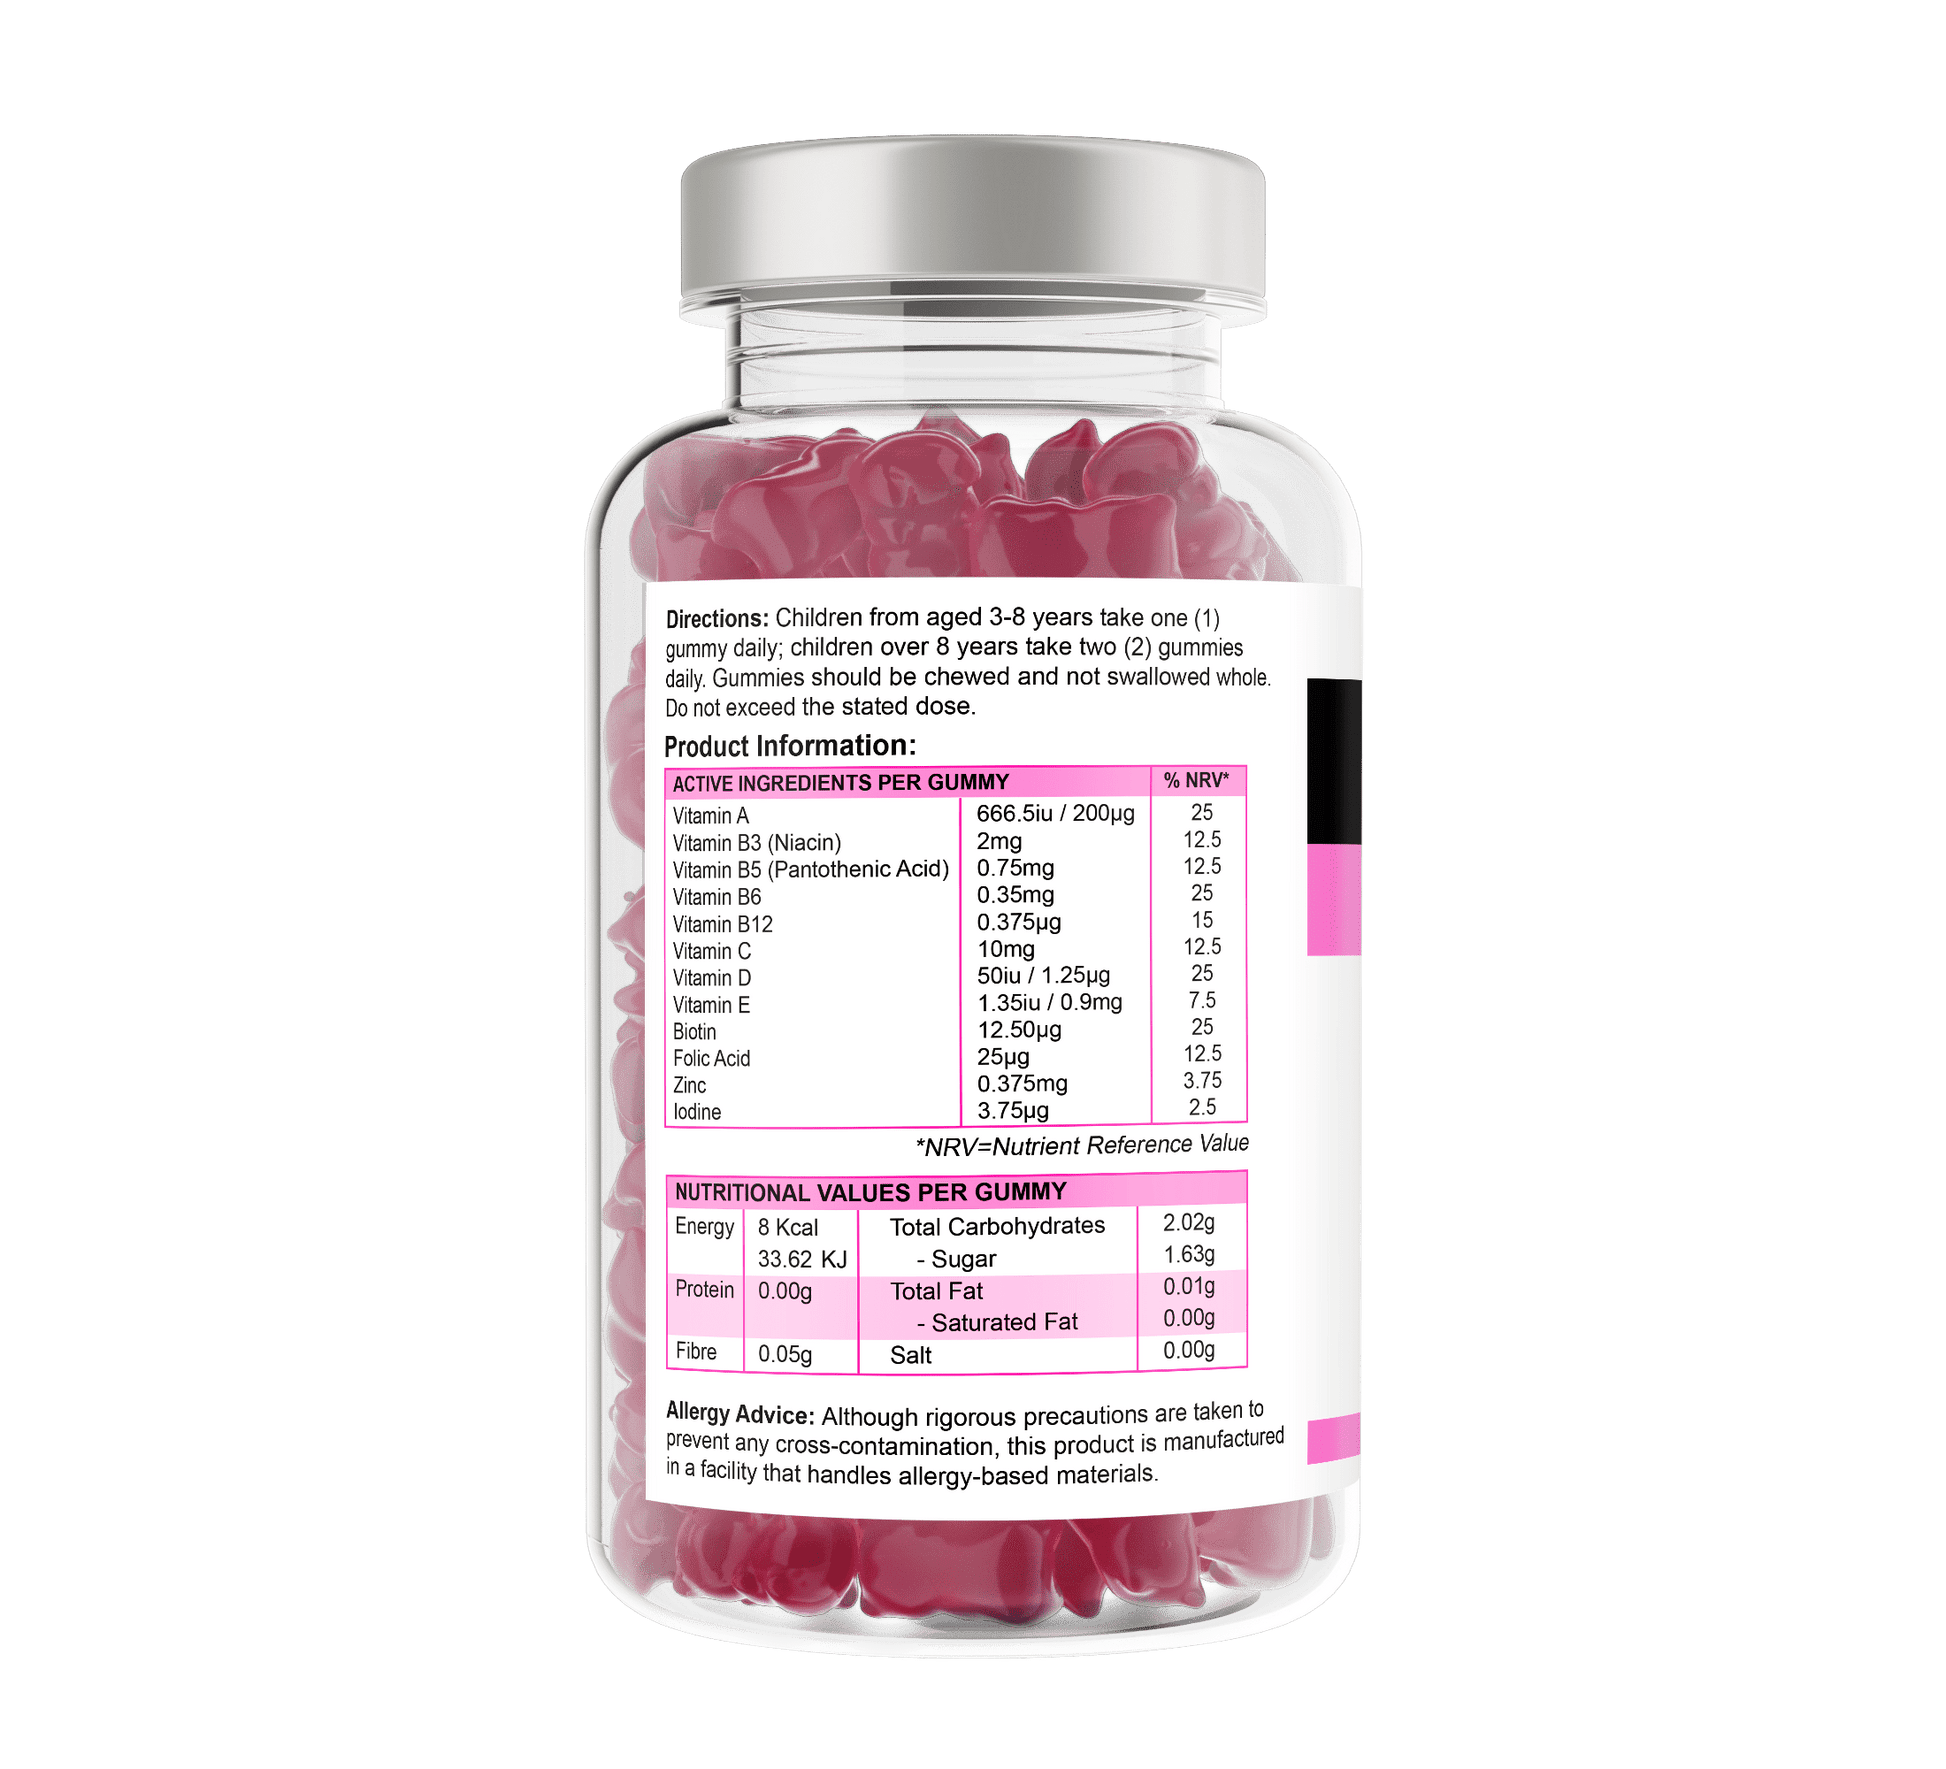 Multivitamin Gummies For Children - Supplemental